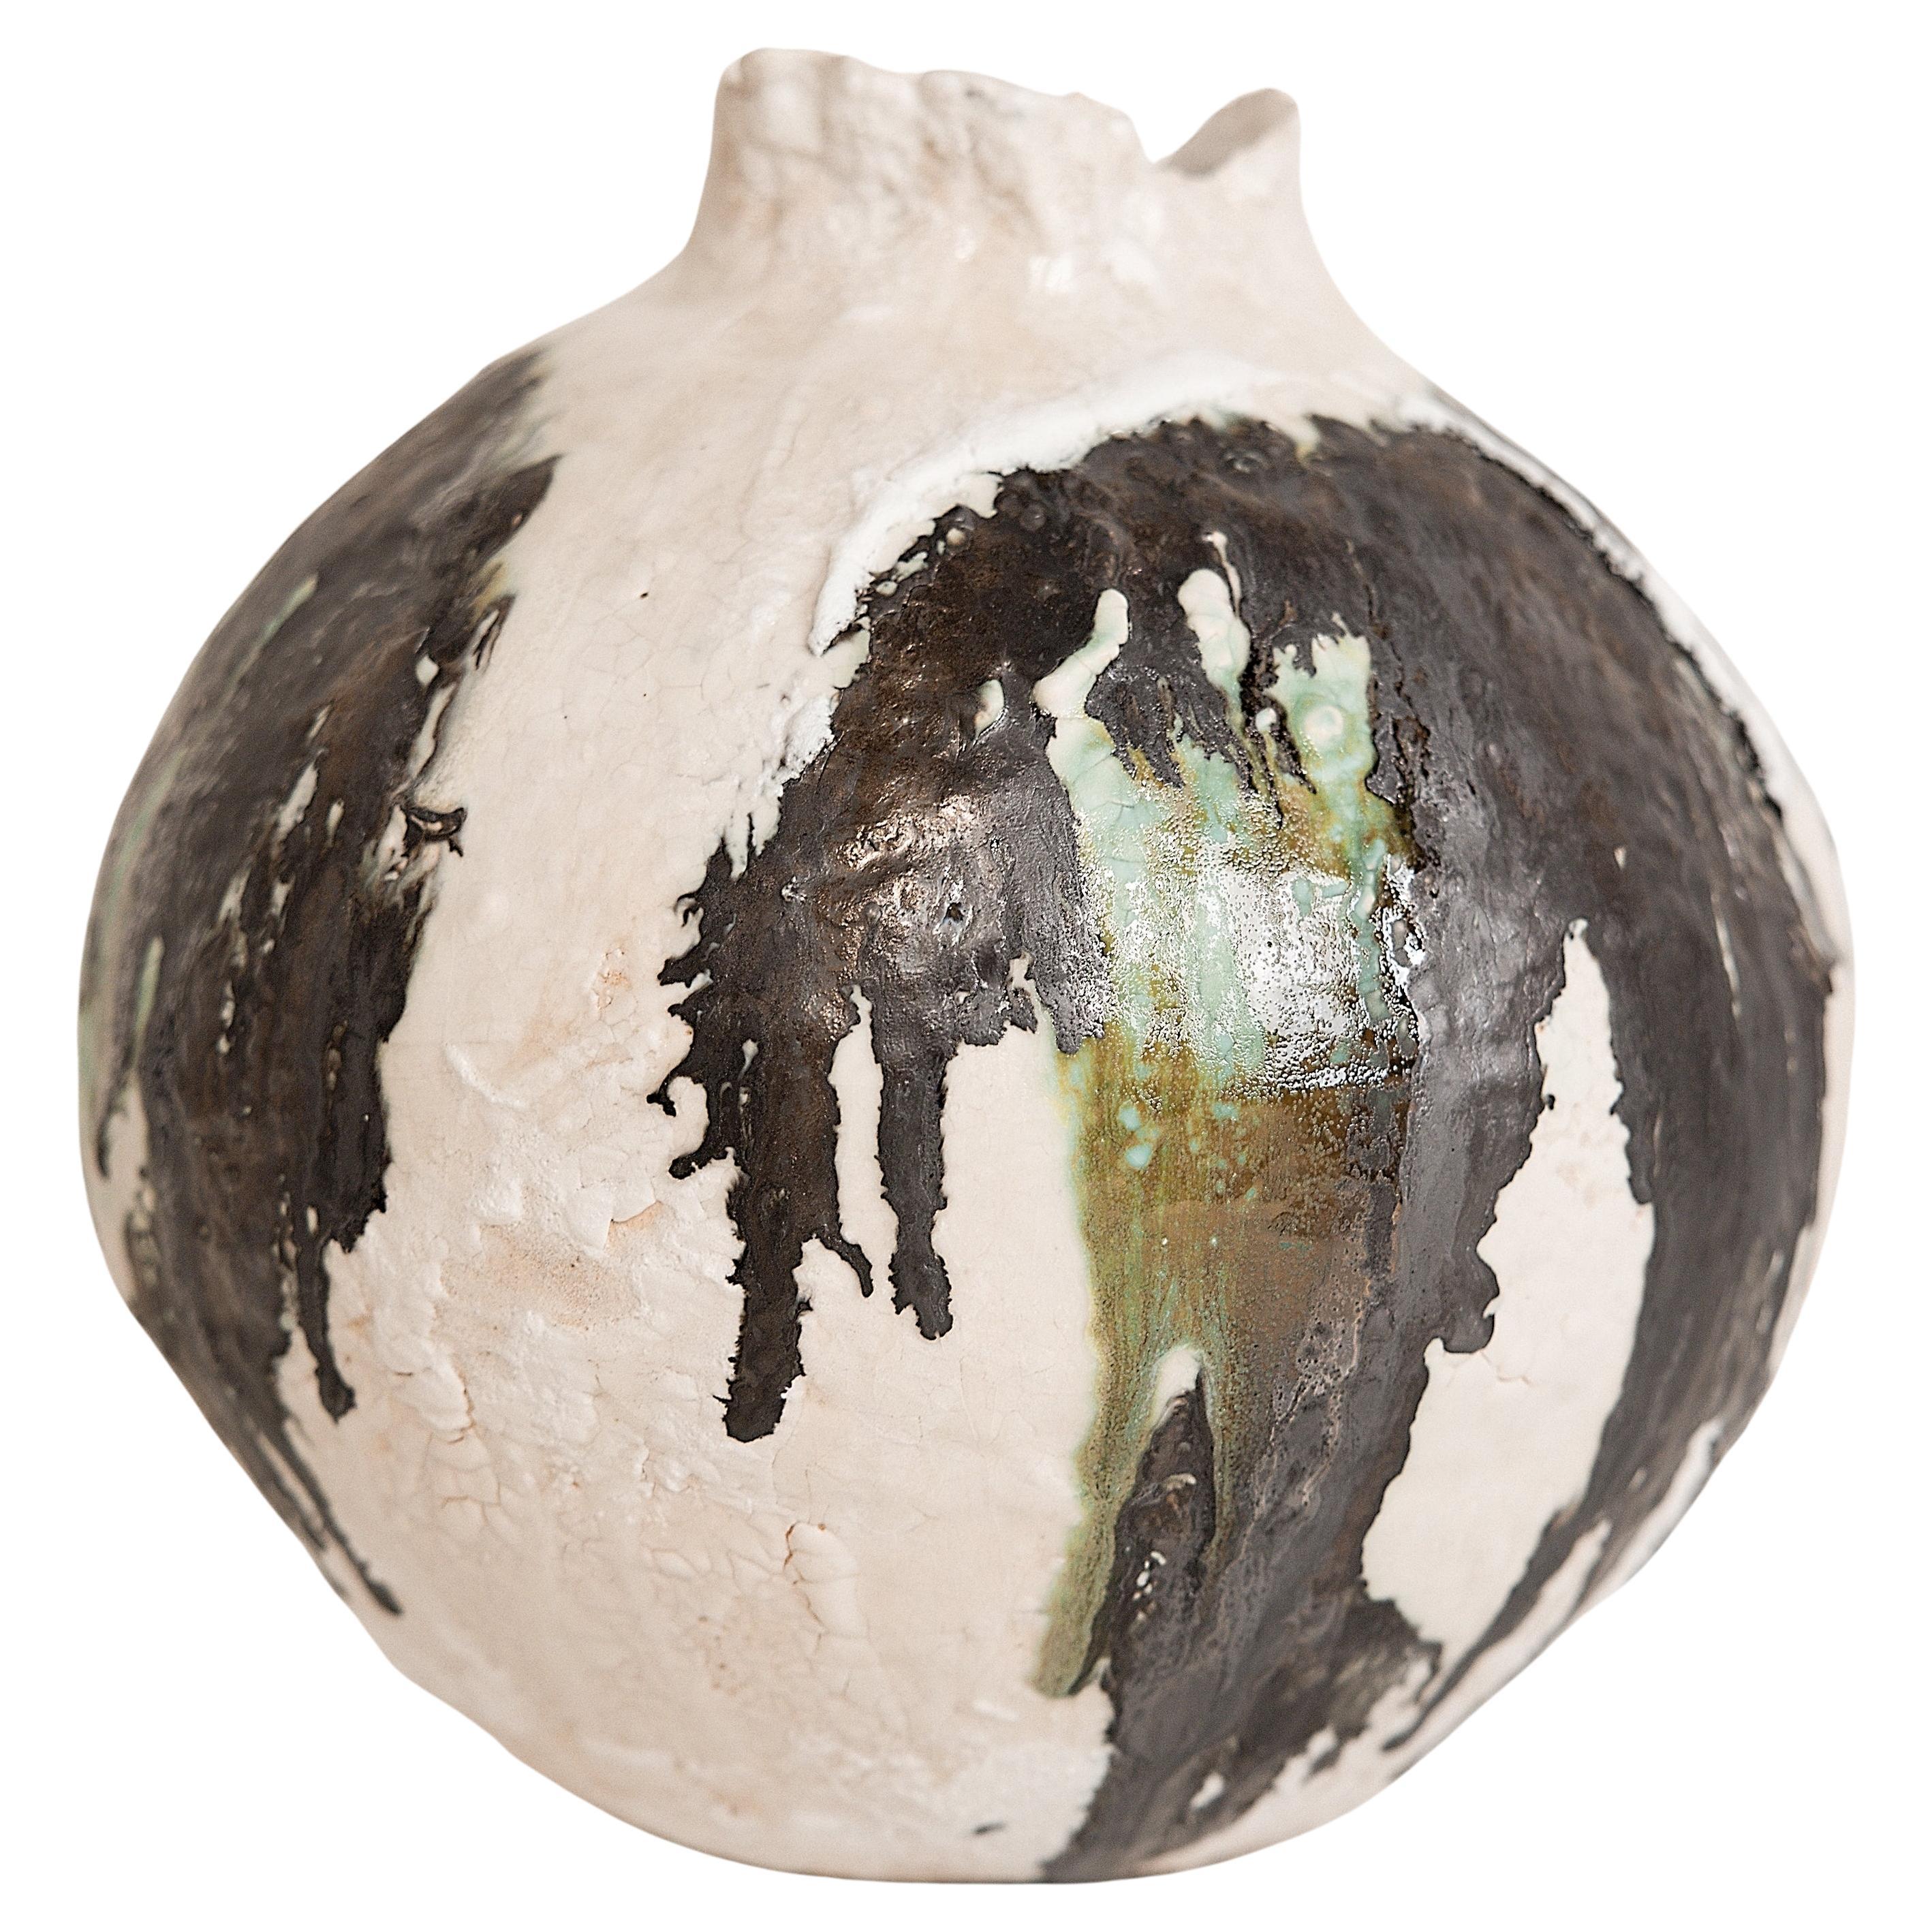 SÉRIE BOISÉE 

Grand vase en forme de lune d'une hauteur d'environ 12 pouces et d'une largeur d'environ 12 pouces.
Lourd : 12lbs
Un mélange de tradition et de modernité organique avec ce pot Large Moon  forme avec texture et plusieurs couches de